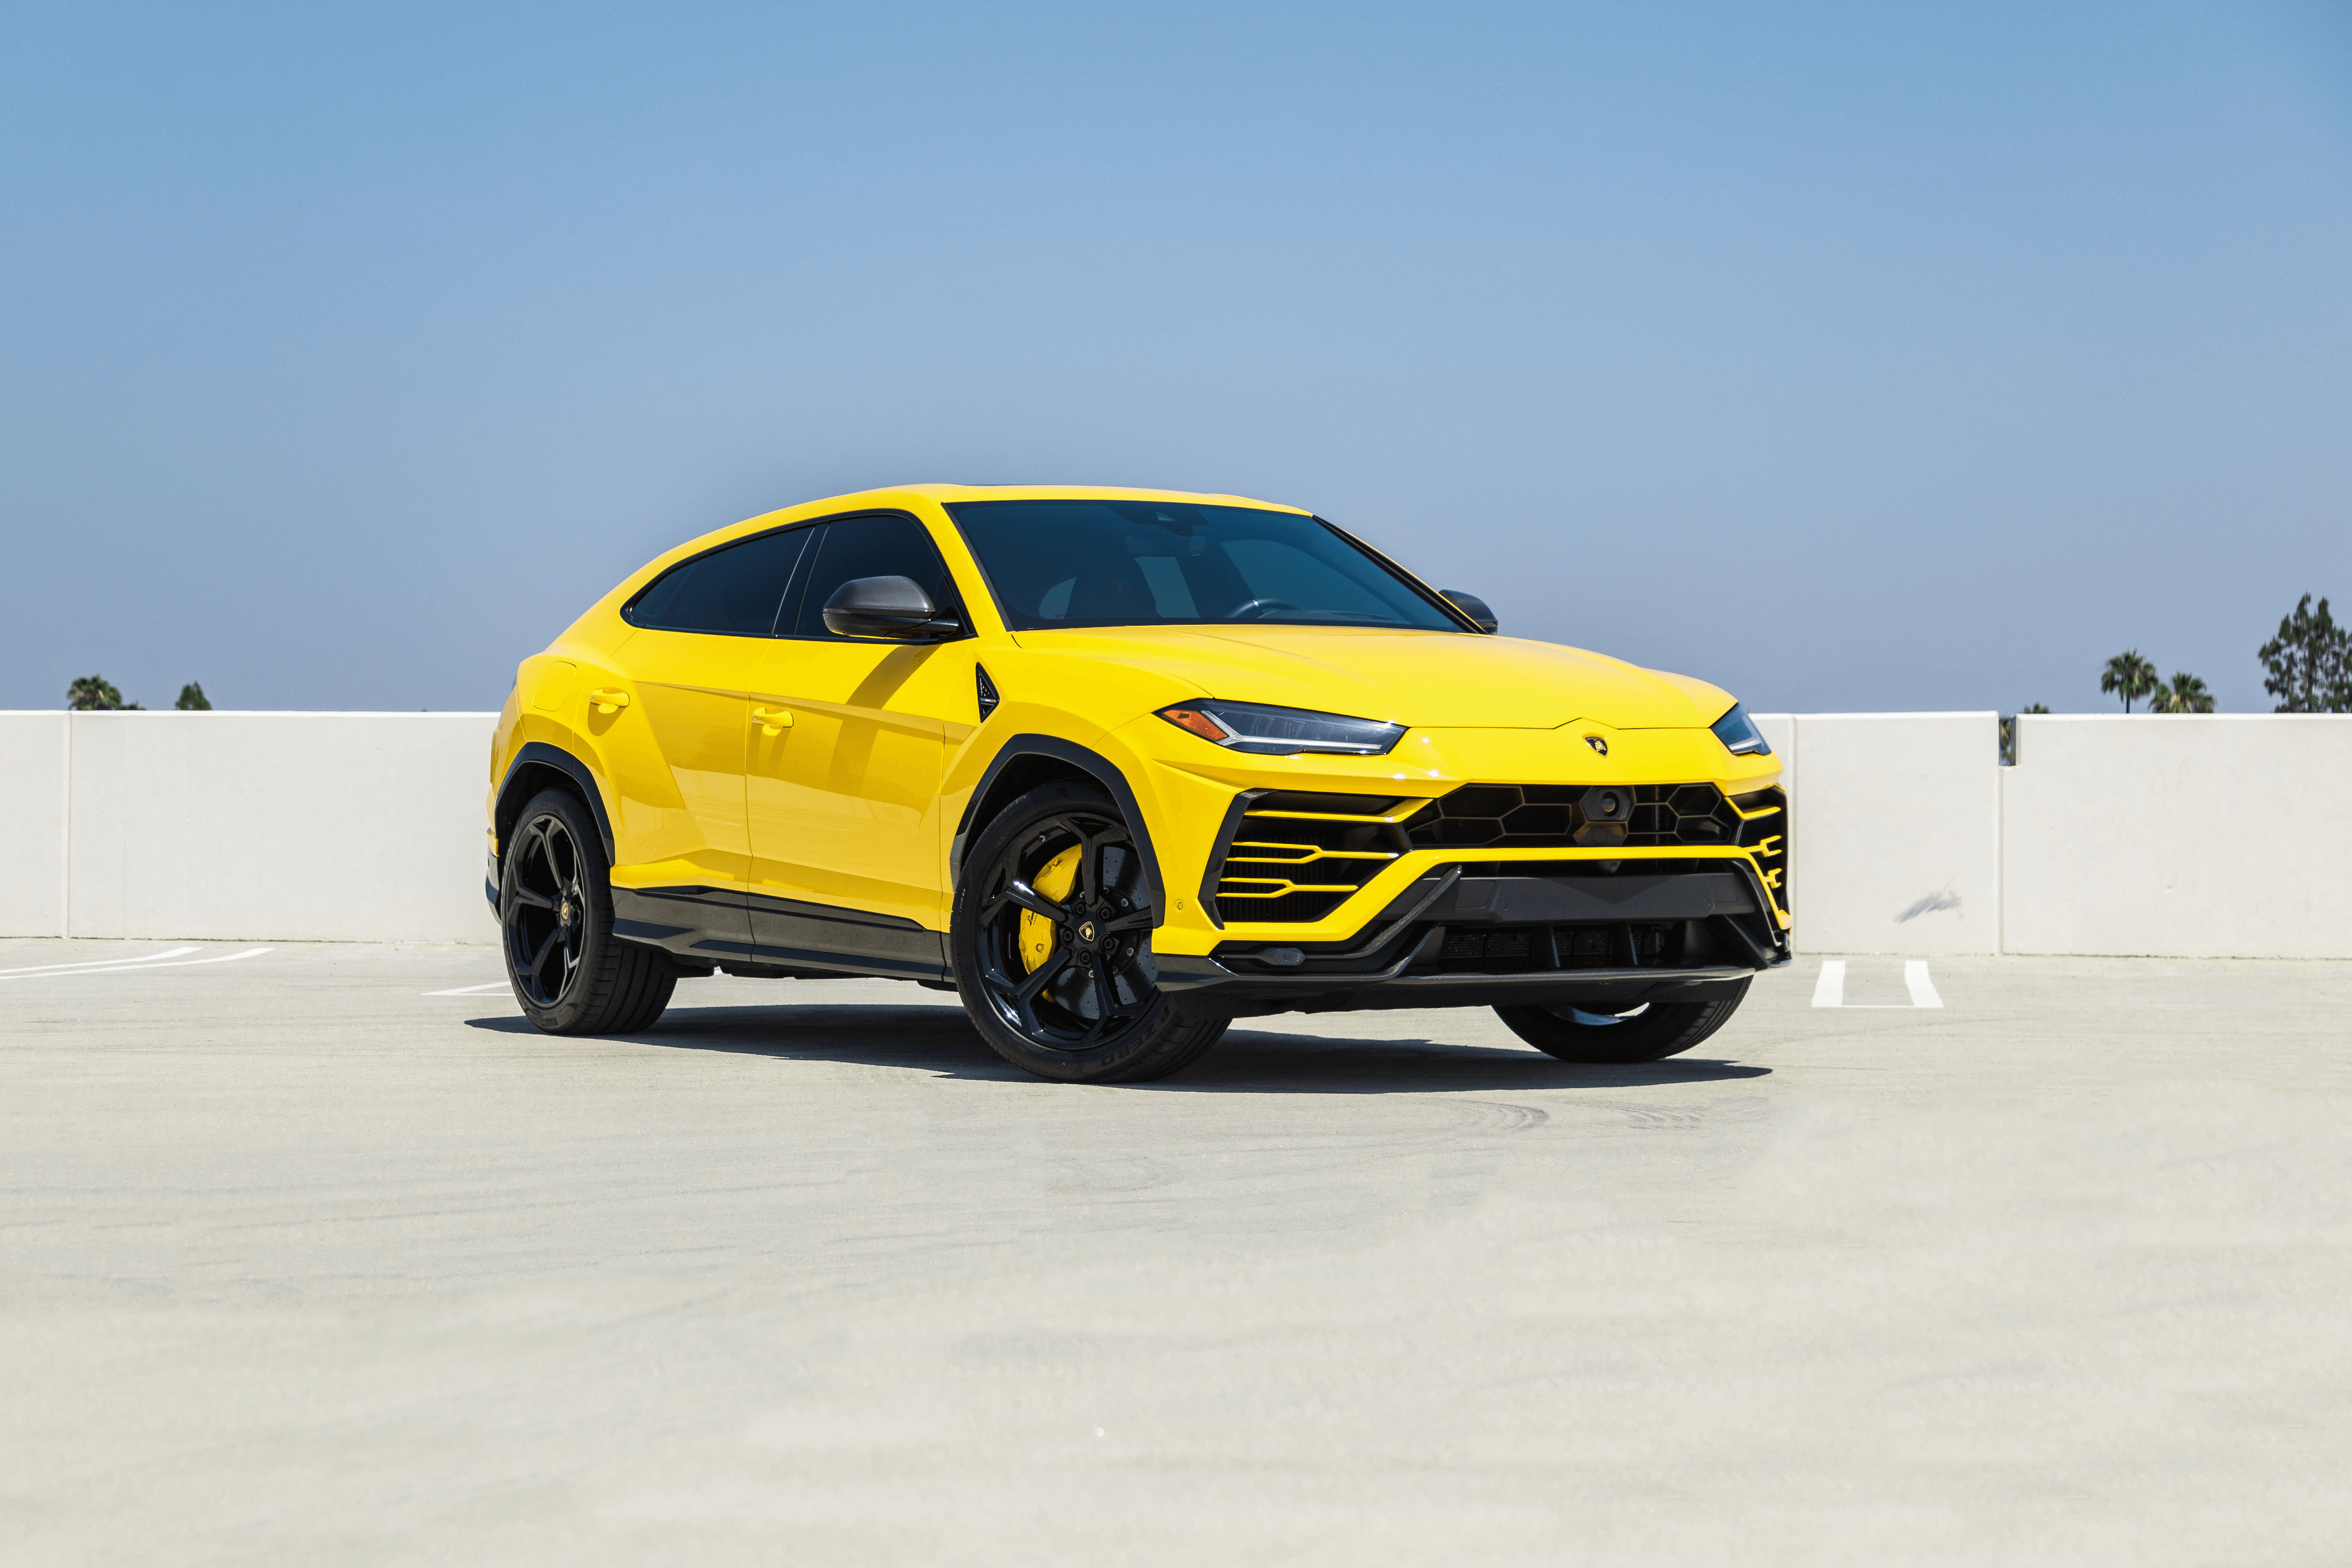 Lamborghini Urus – Yellow